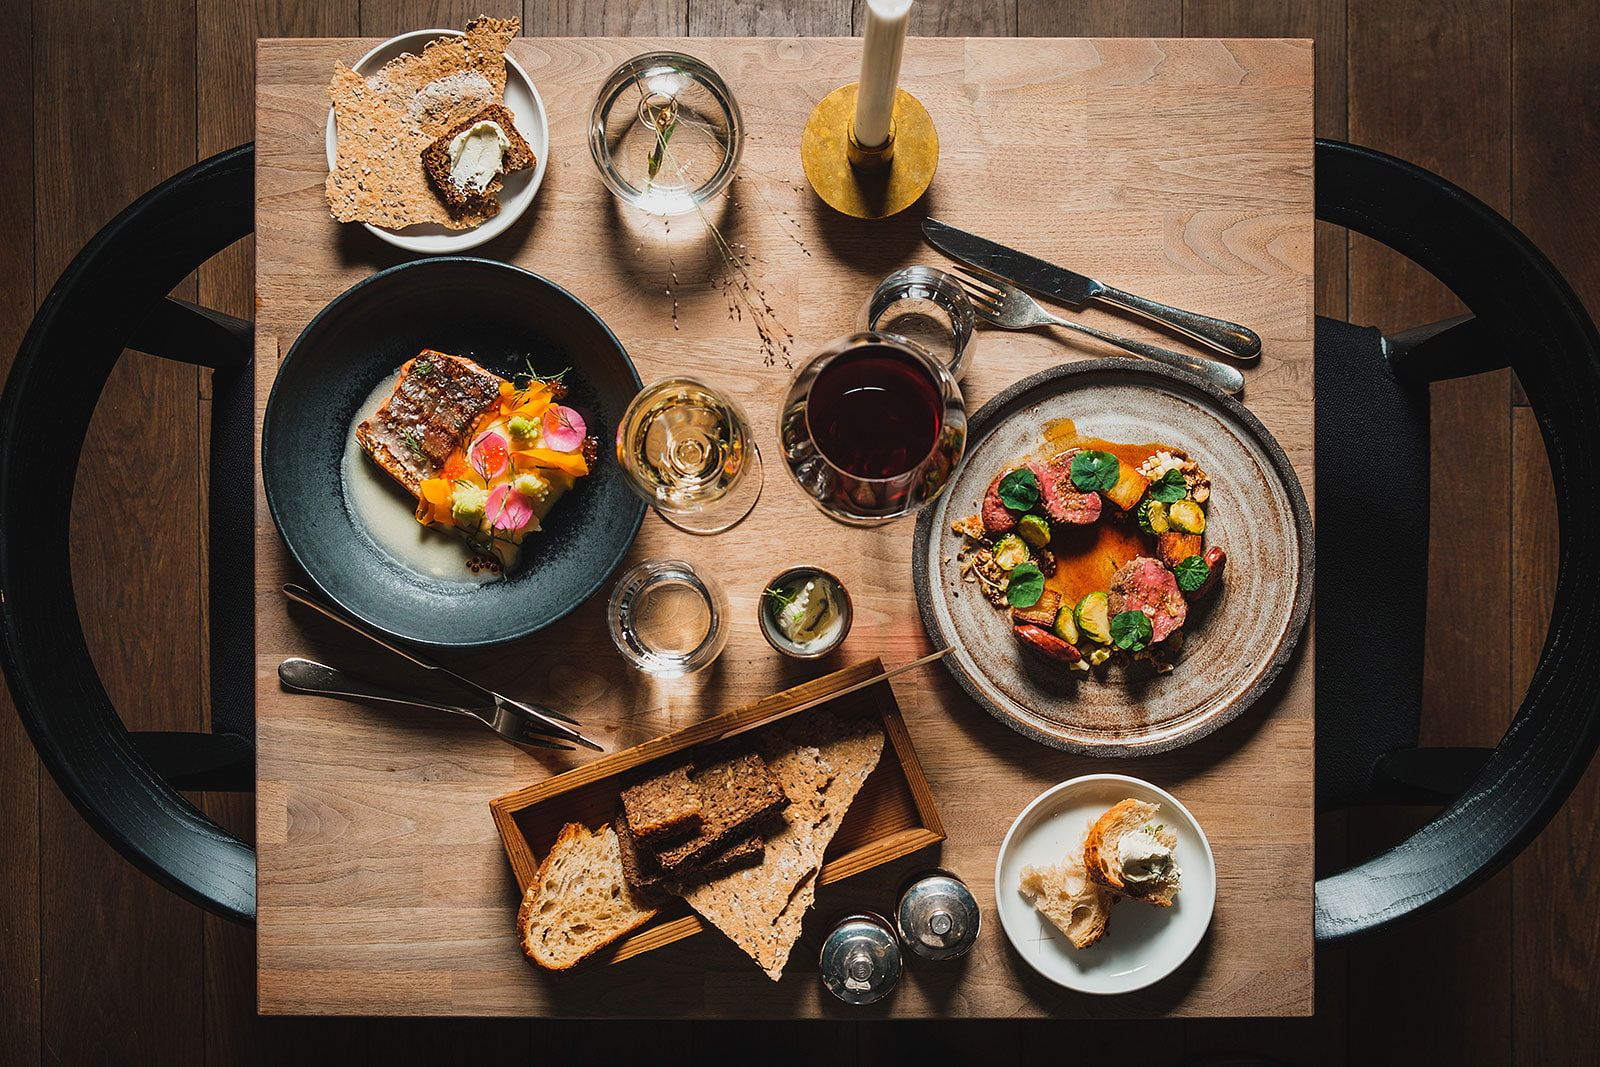 Dining Room & Cocktail Bar At Six – Bästa restaurangerna i city och Norrmalm